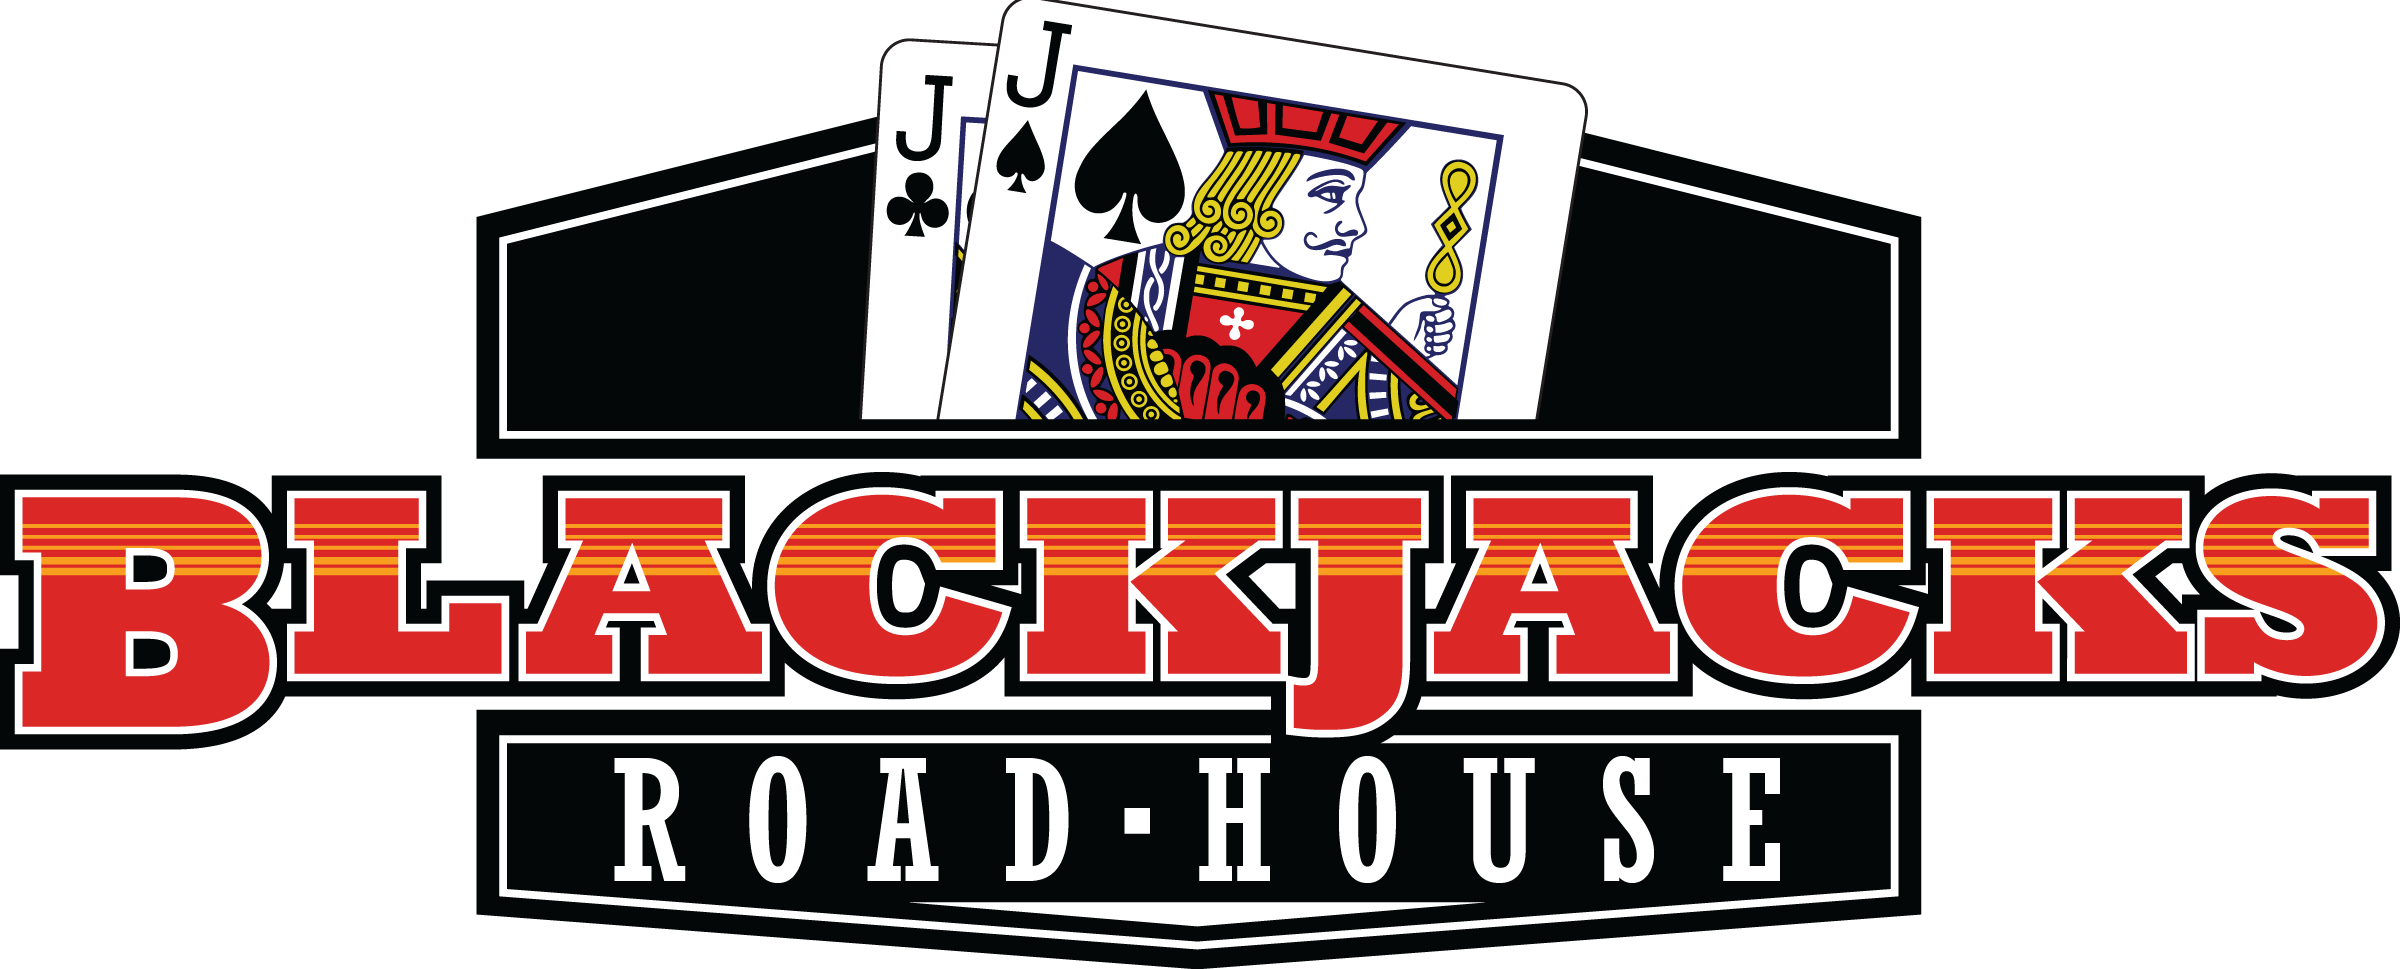 Blackjacks Roadhouse (2400x969)